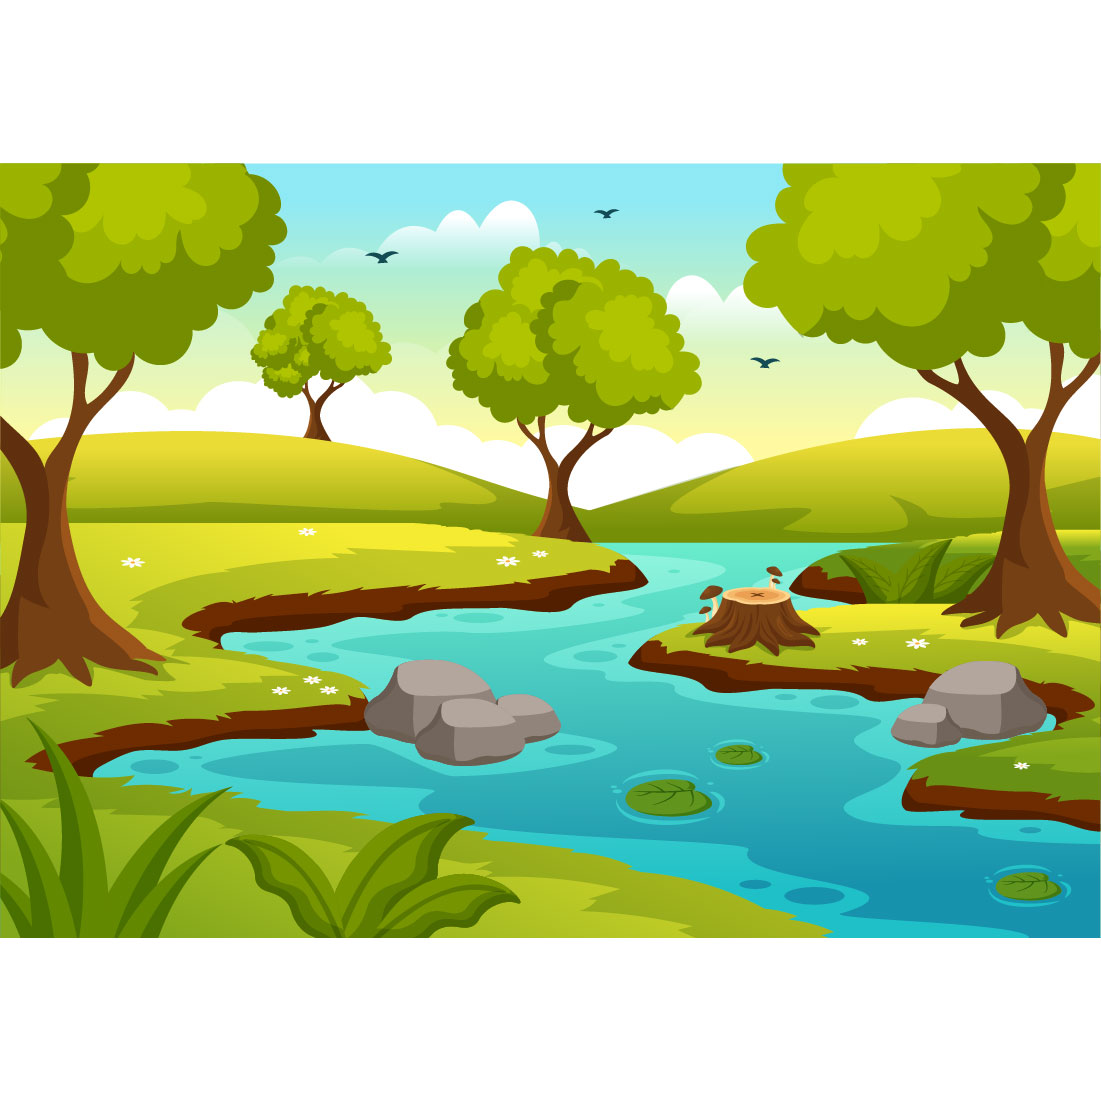 12 River Landscape Illustration preview image.